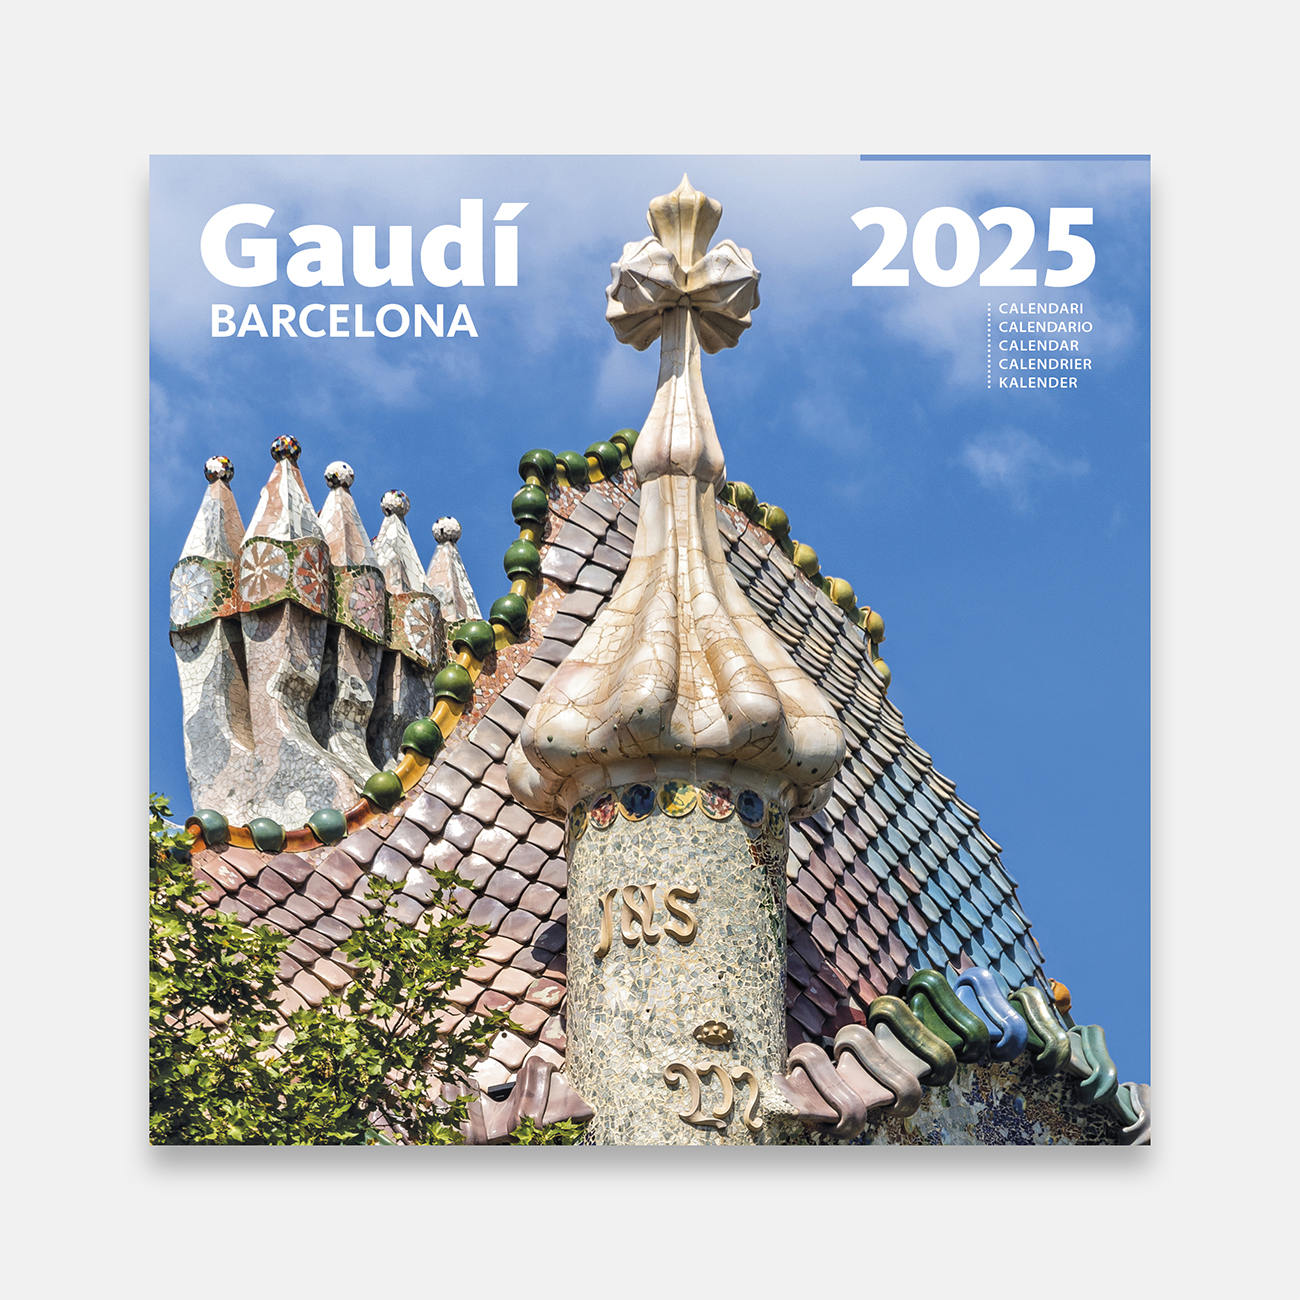 Calendario 2025 Gaudí - Casa Batlló 25g1 a calendario pared 2025 gaudi casa batllo